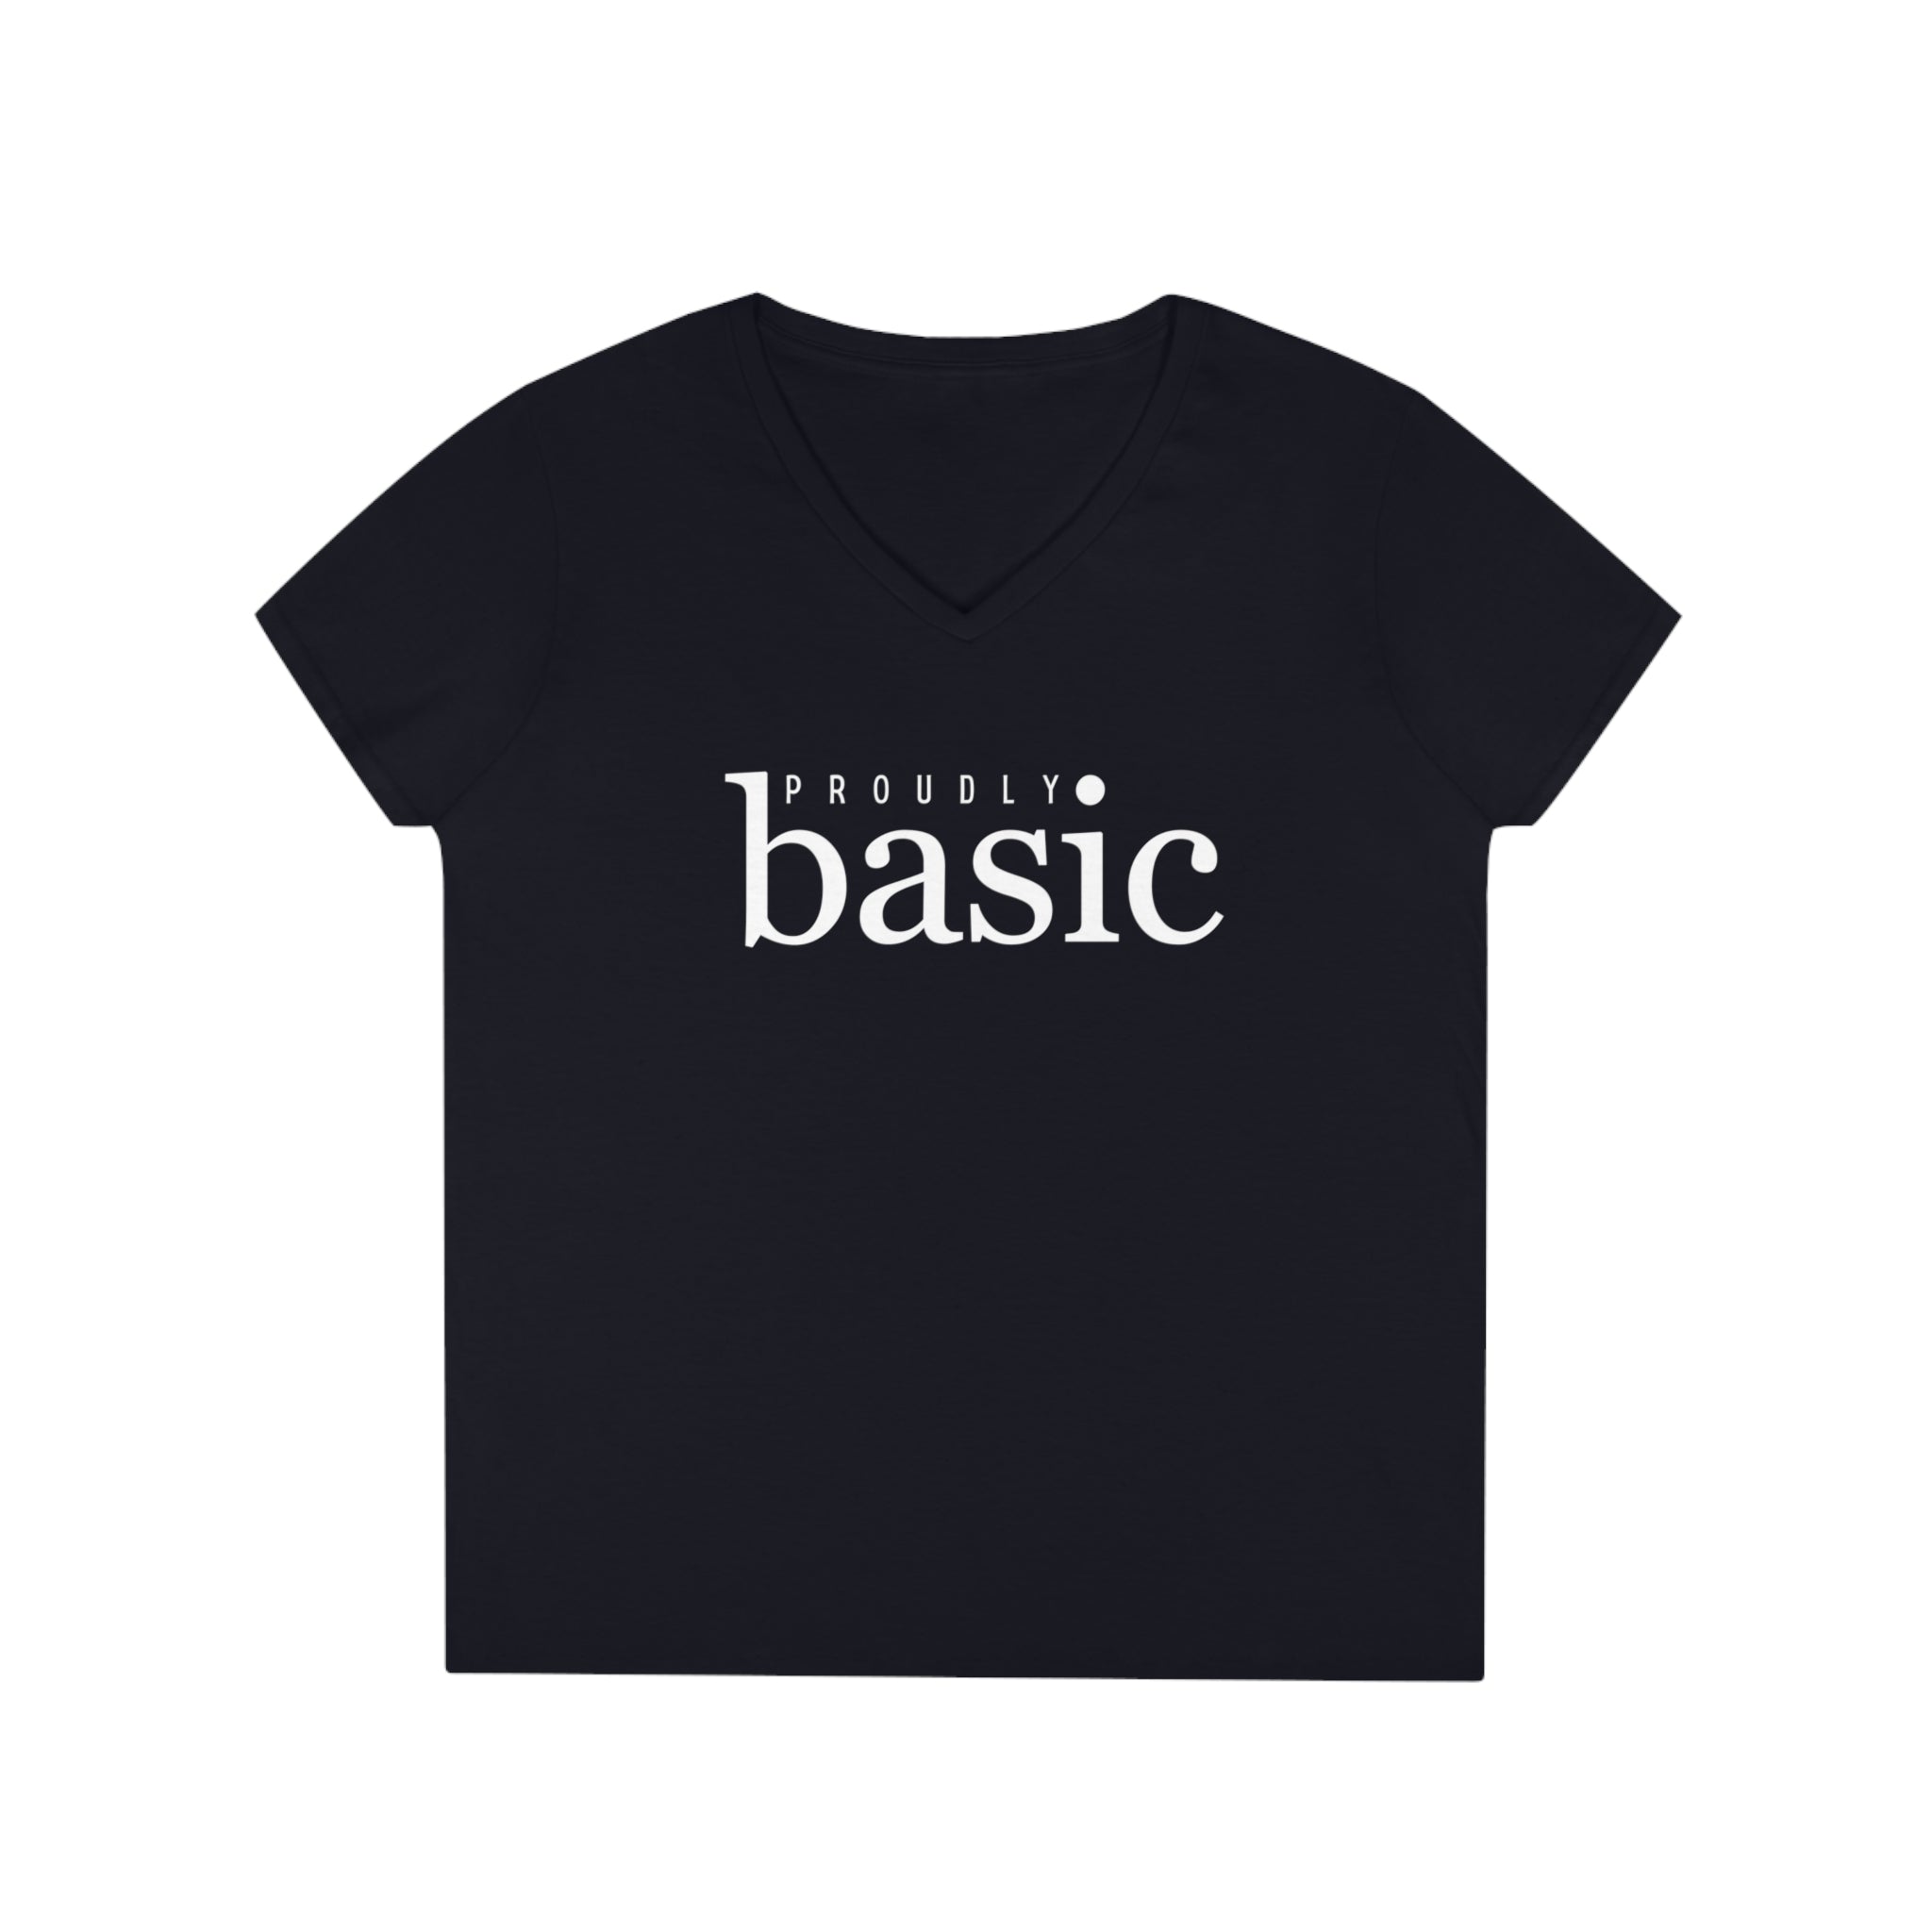  Proudly BASIC Female Empowerment Women's V Neck T-shirt, Feminist Graphic Tee, Cute Women's T-shirt V-neck2XLBlack